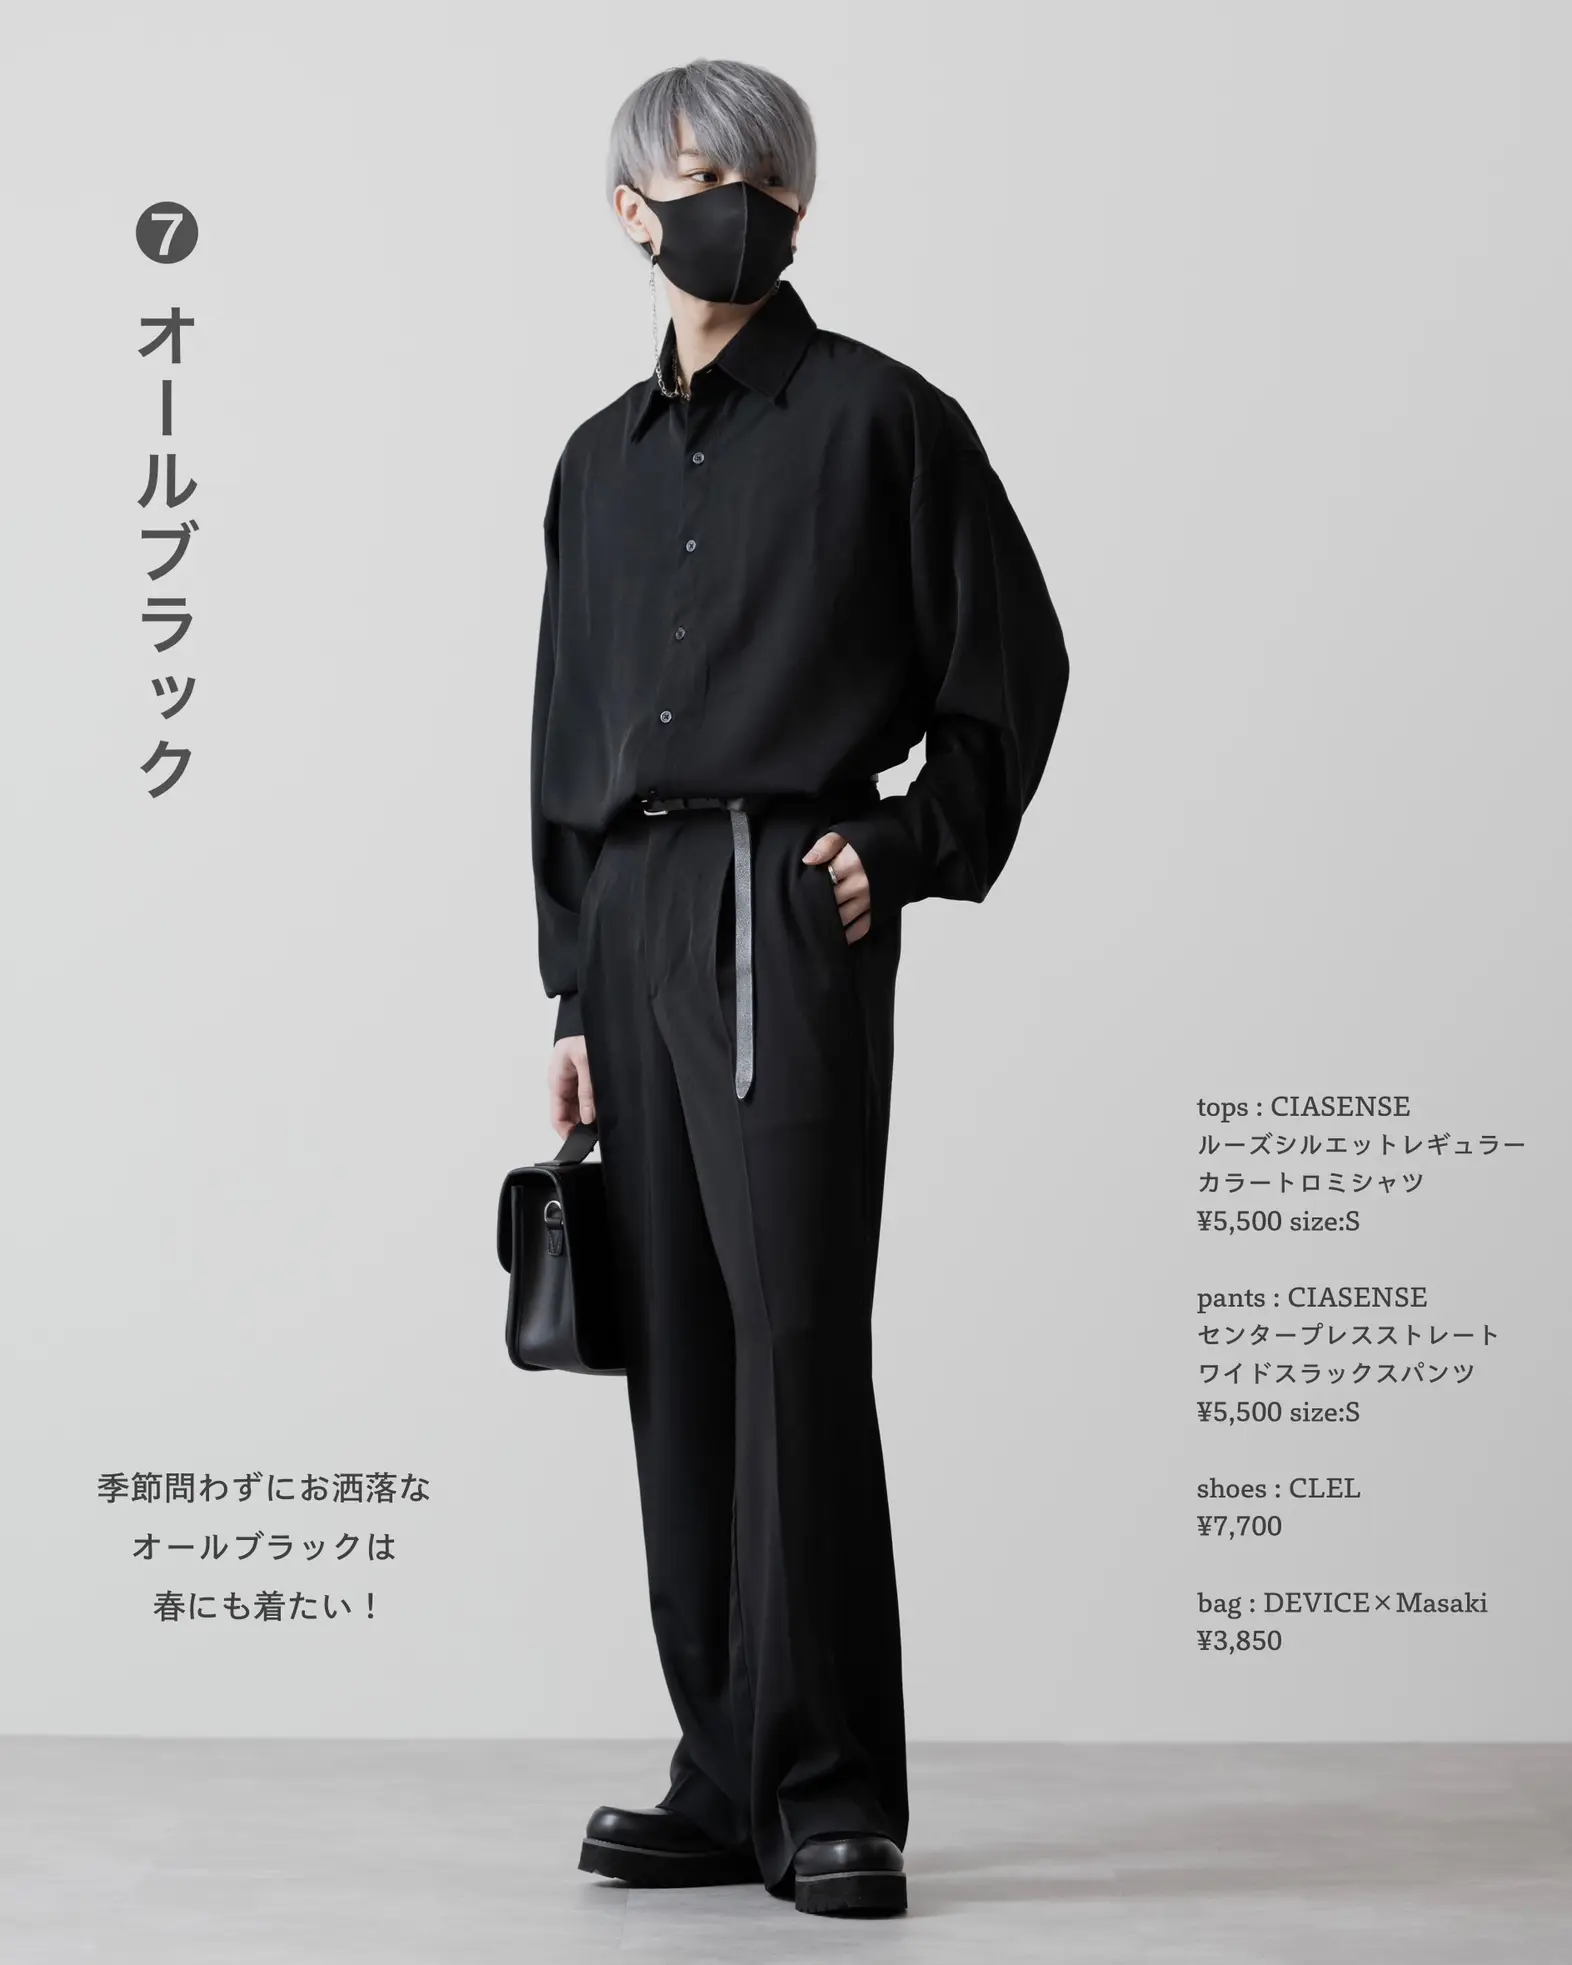 春休みに着たい男子の服装 | MASAKIが投稿したフォトブック | Lemon8